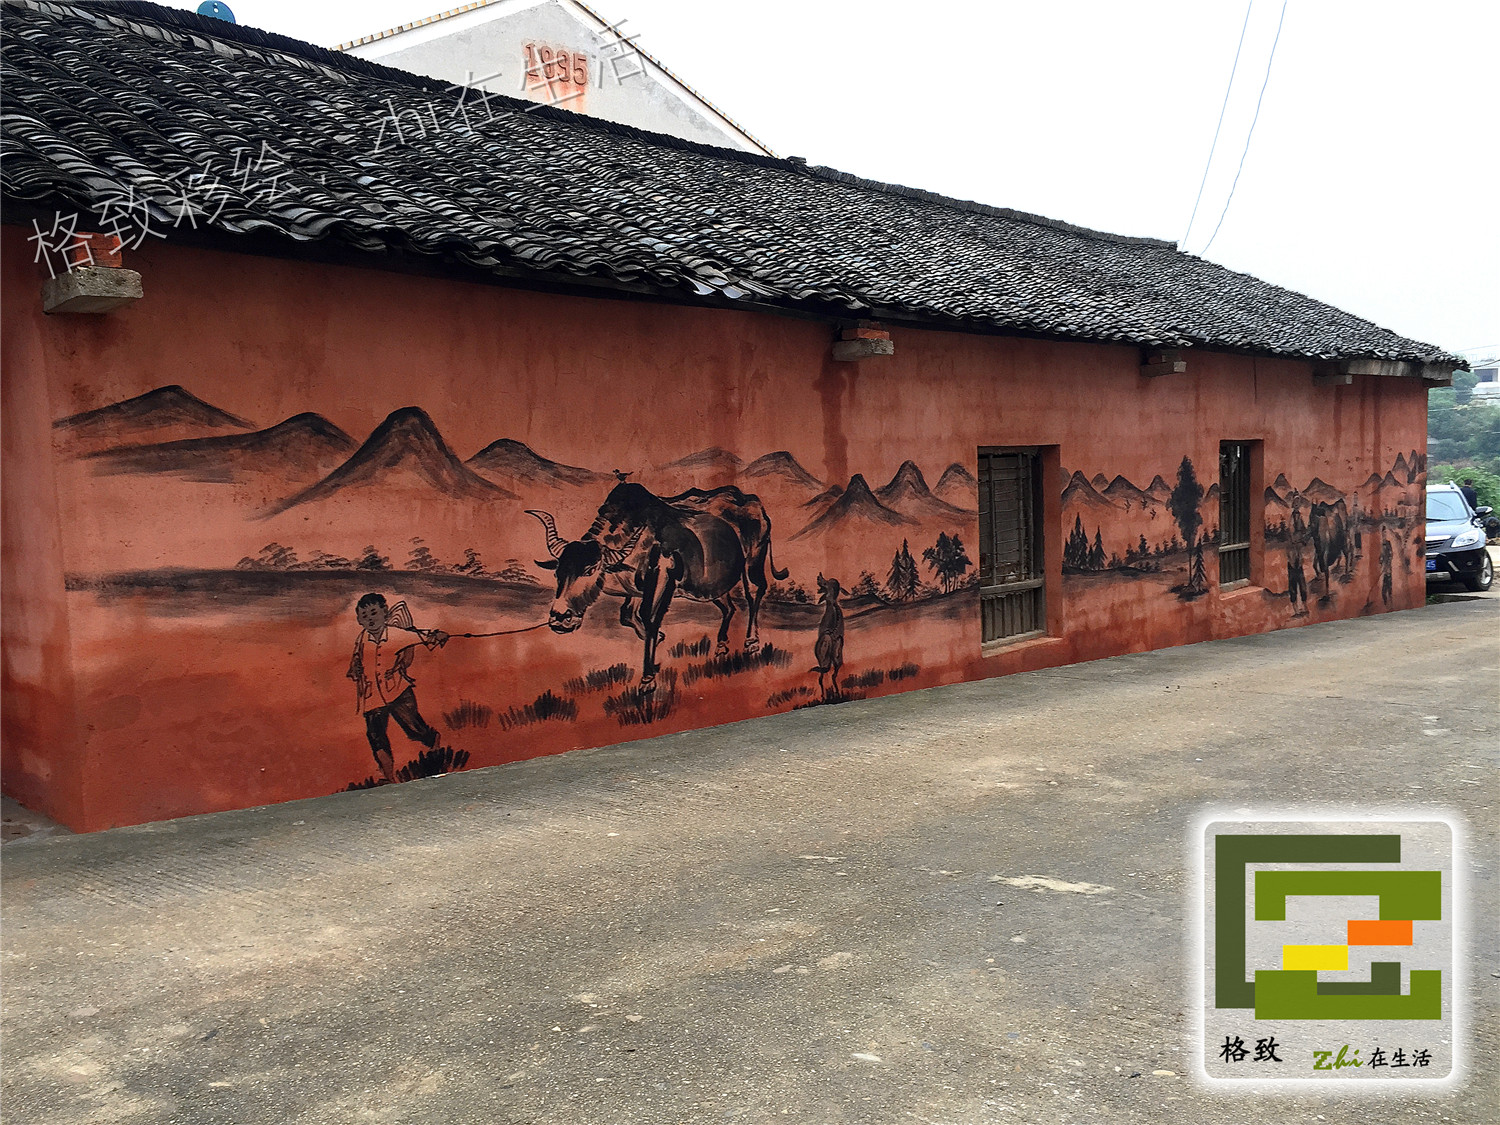 长沙宁乡偕乐桥农耕文化墙墙绘项目,墙绘壁画